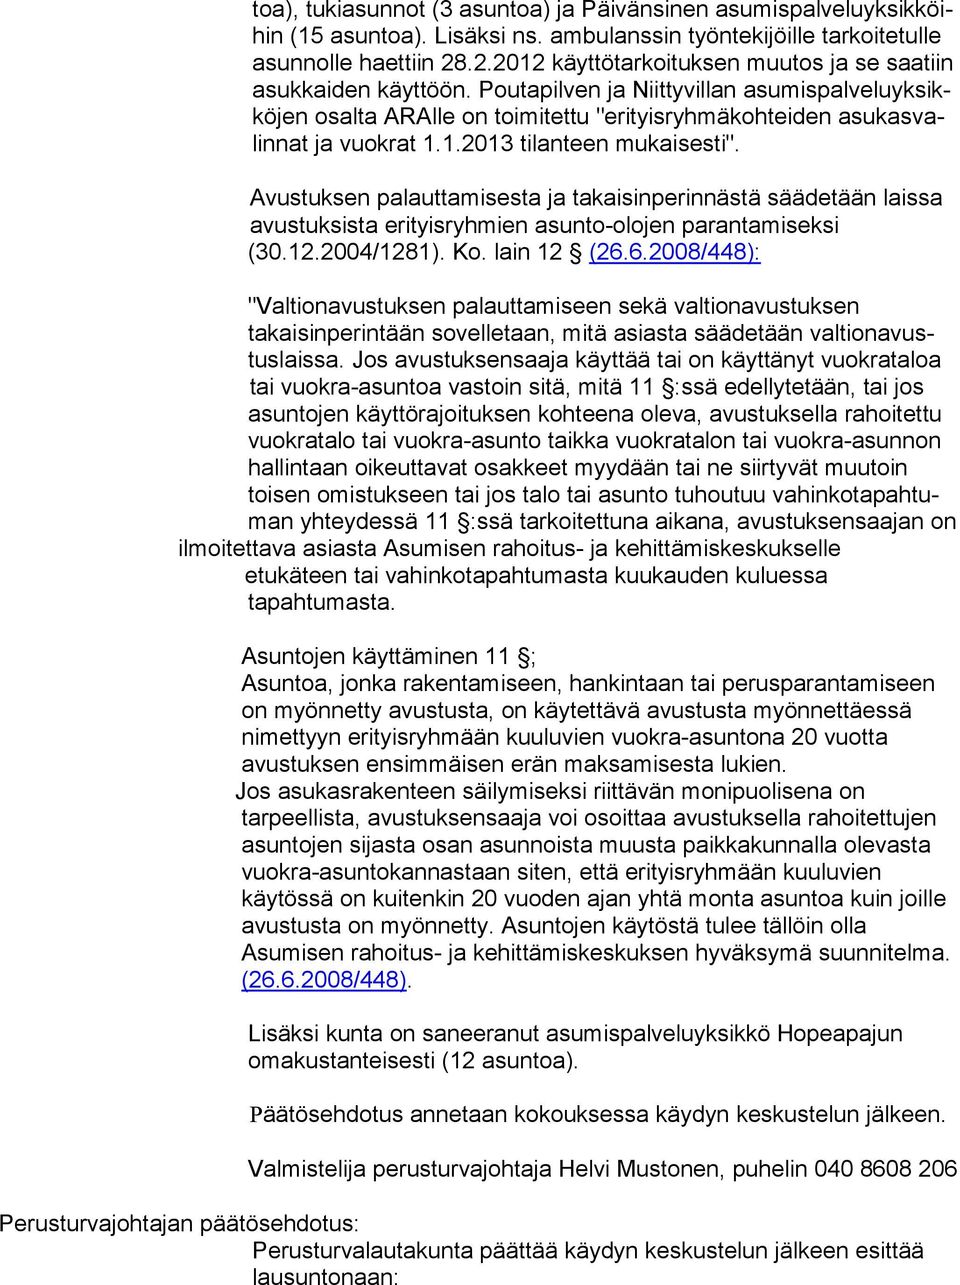 Poutapilven ja Niittyvillan asu mis pal ve lu yk sikkö jen osalta ARAlle on toimitettu "erityisryhmäkohteiden asu kas valin nat ja vuokrat 1.1.2013 tilanteen mukaisesti".